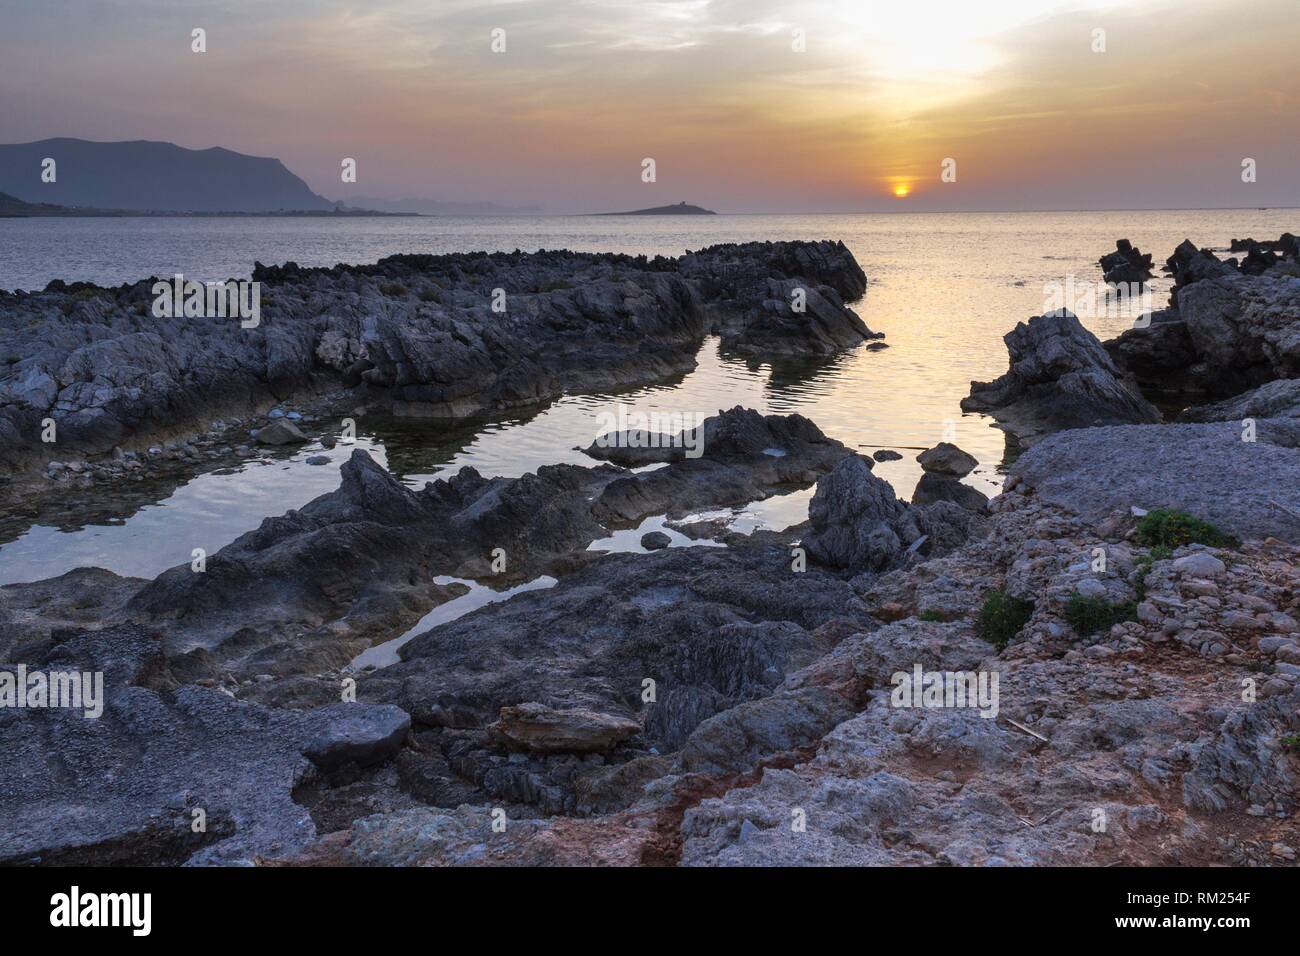 Una imponente vista de la isla de damas al anochecer. Palermo, Sicilia. Italia. Foto de stock